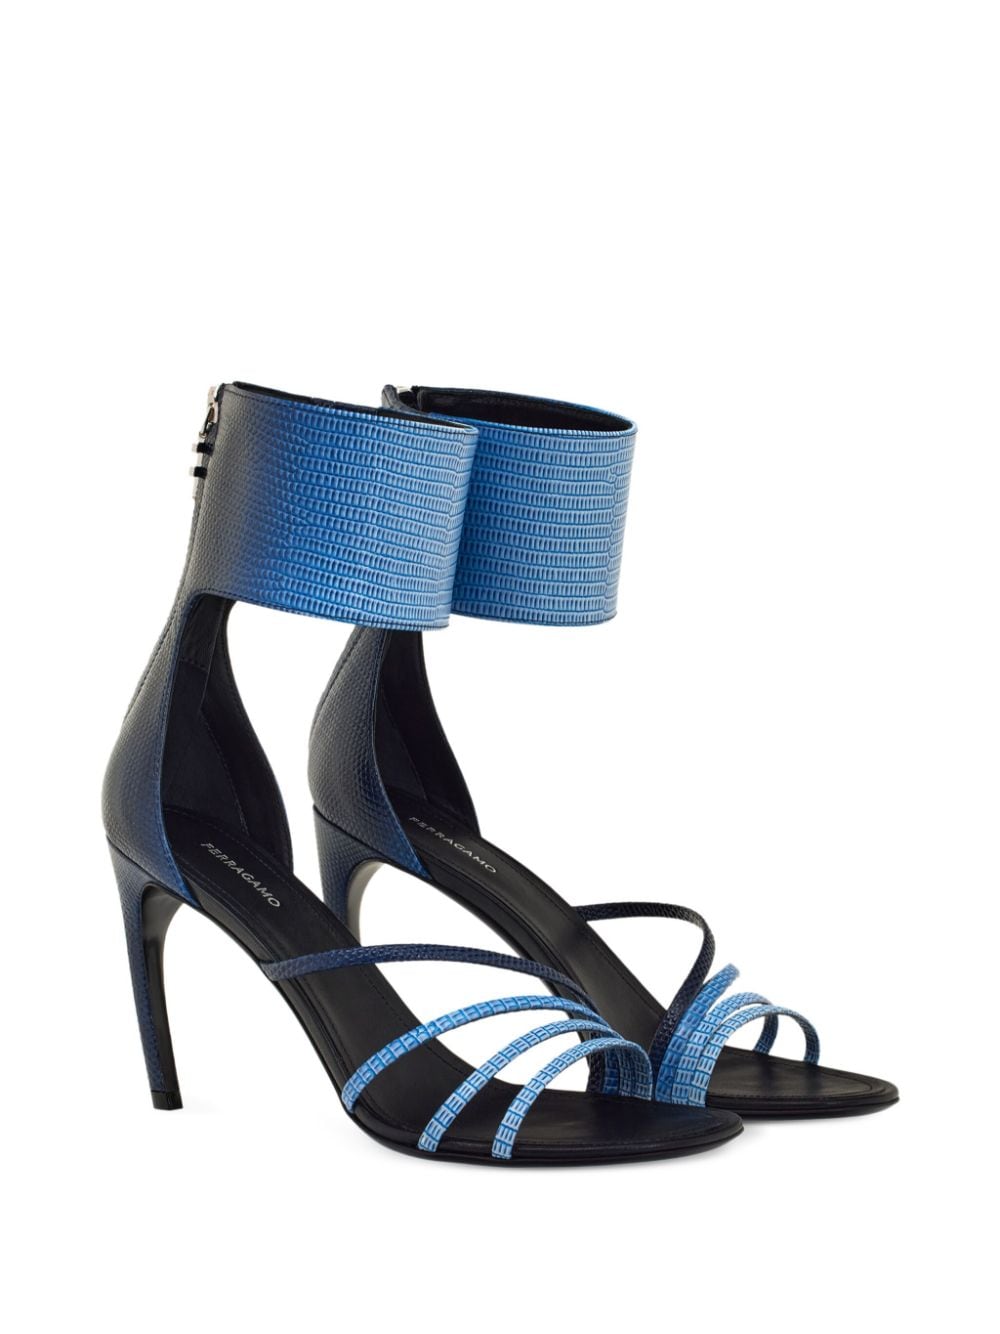 Ferragamo Leren sandalen 85 mm - Blauw